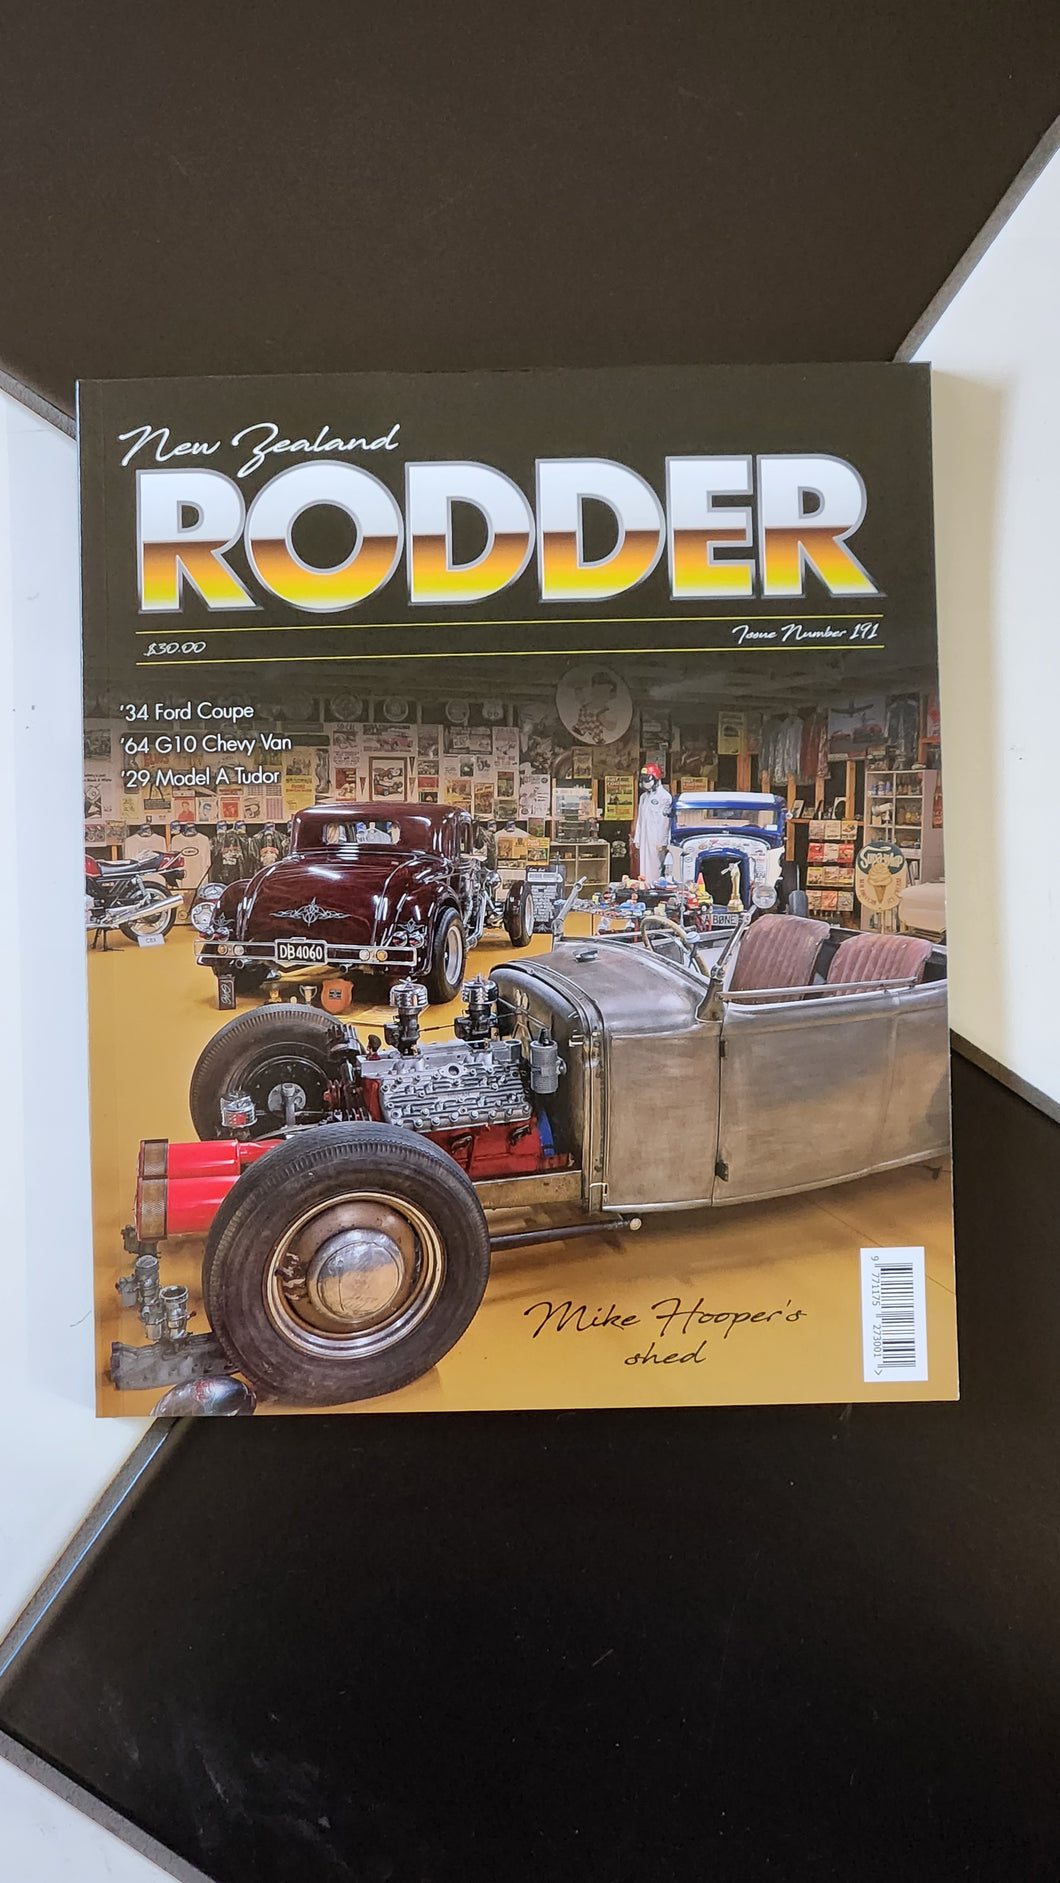 NZ Rodder - Issue Number 191